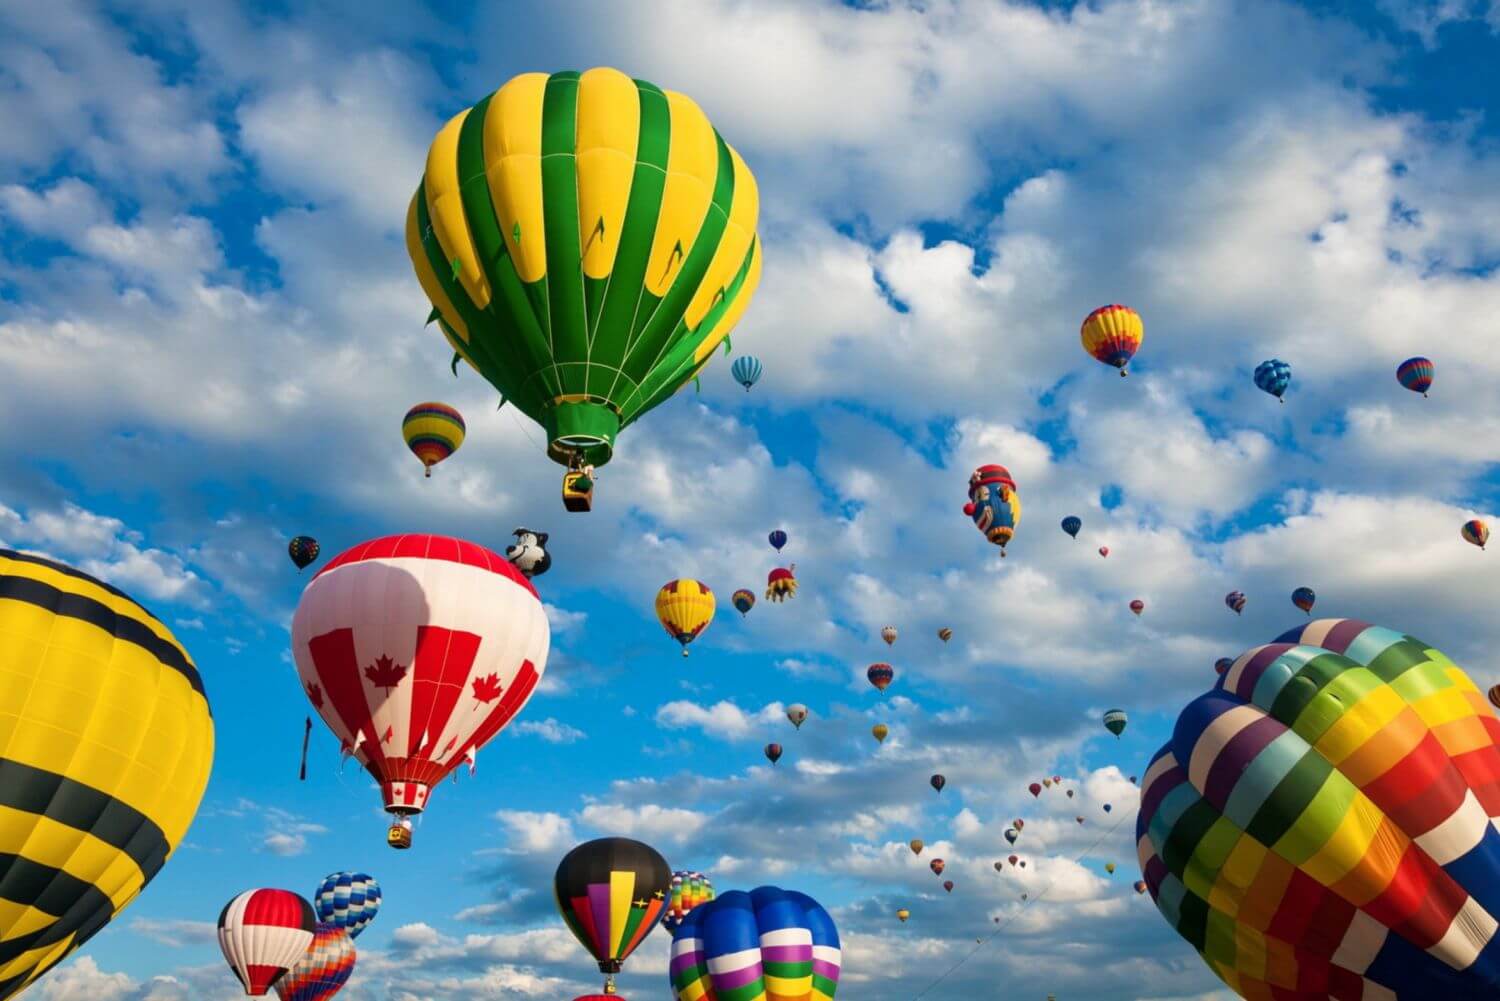 Картинки воздушный шар с корзиной в небе с облаками